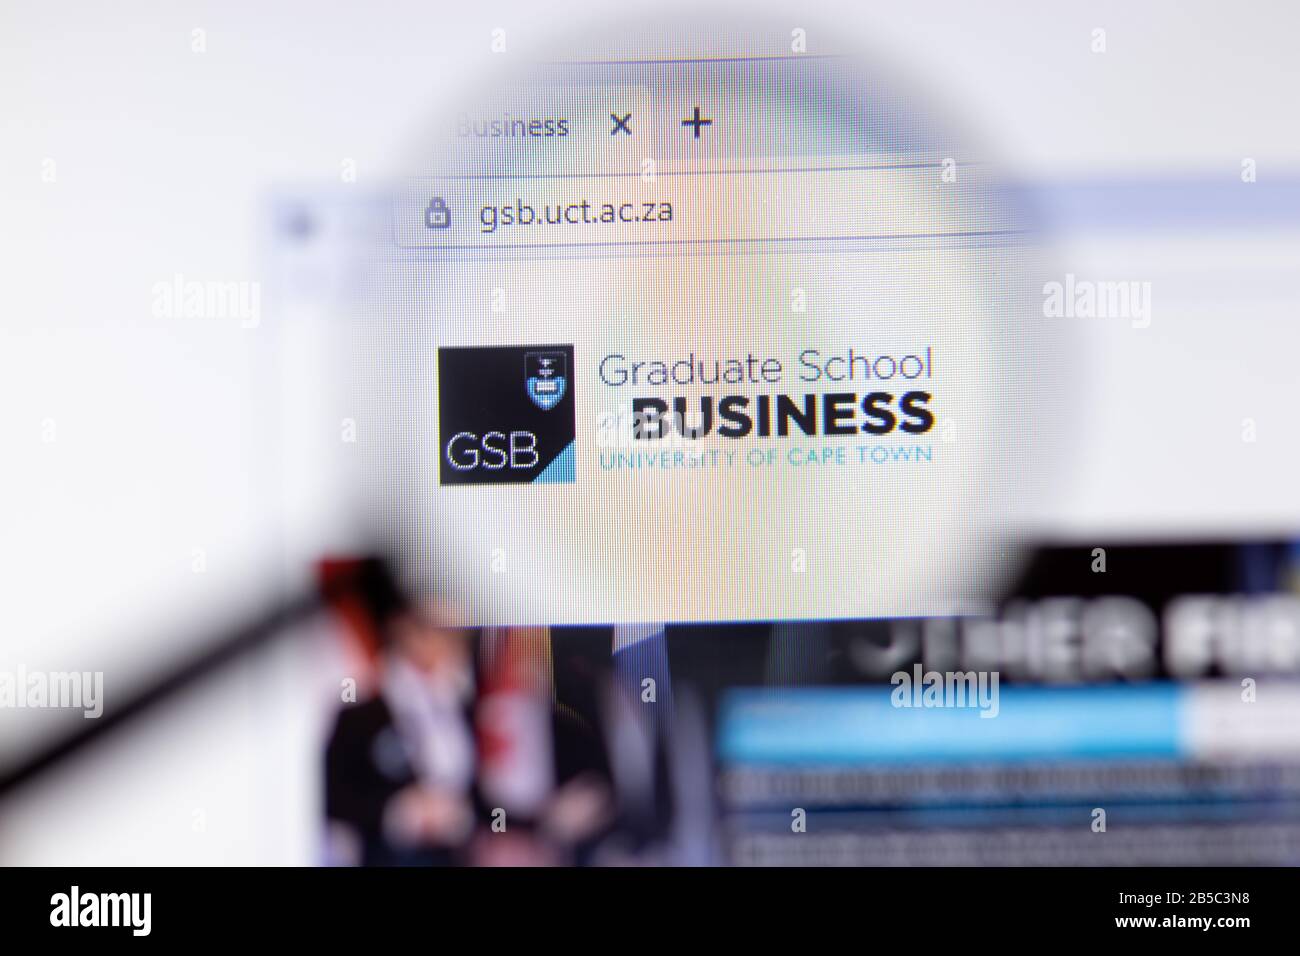 Los Angeles, Kalifornien, USA - 7. März 2020: UCT Graduate School of Business Website Homepage Logo sichtbar auf der Anzeige Nahaufnahme, Illustrative Editorial Stockfoto